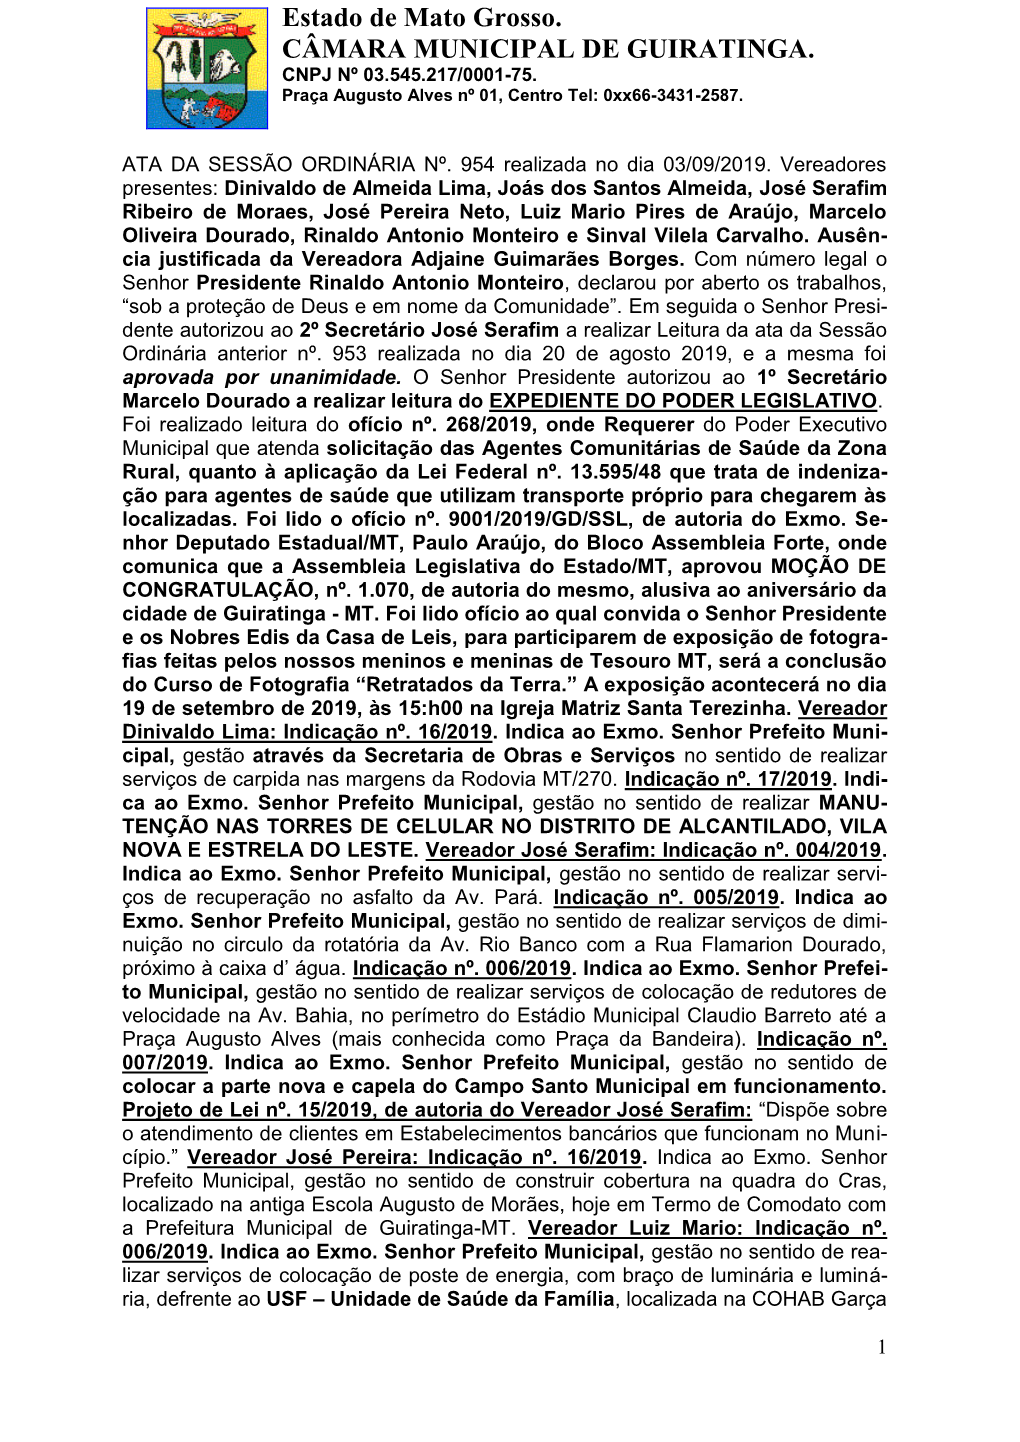 Estado De Mato Grosso. CÂMARA MUNICIPAL DE GUIRATINGA. CNPJ Nº 03.545.217/0001-75